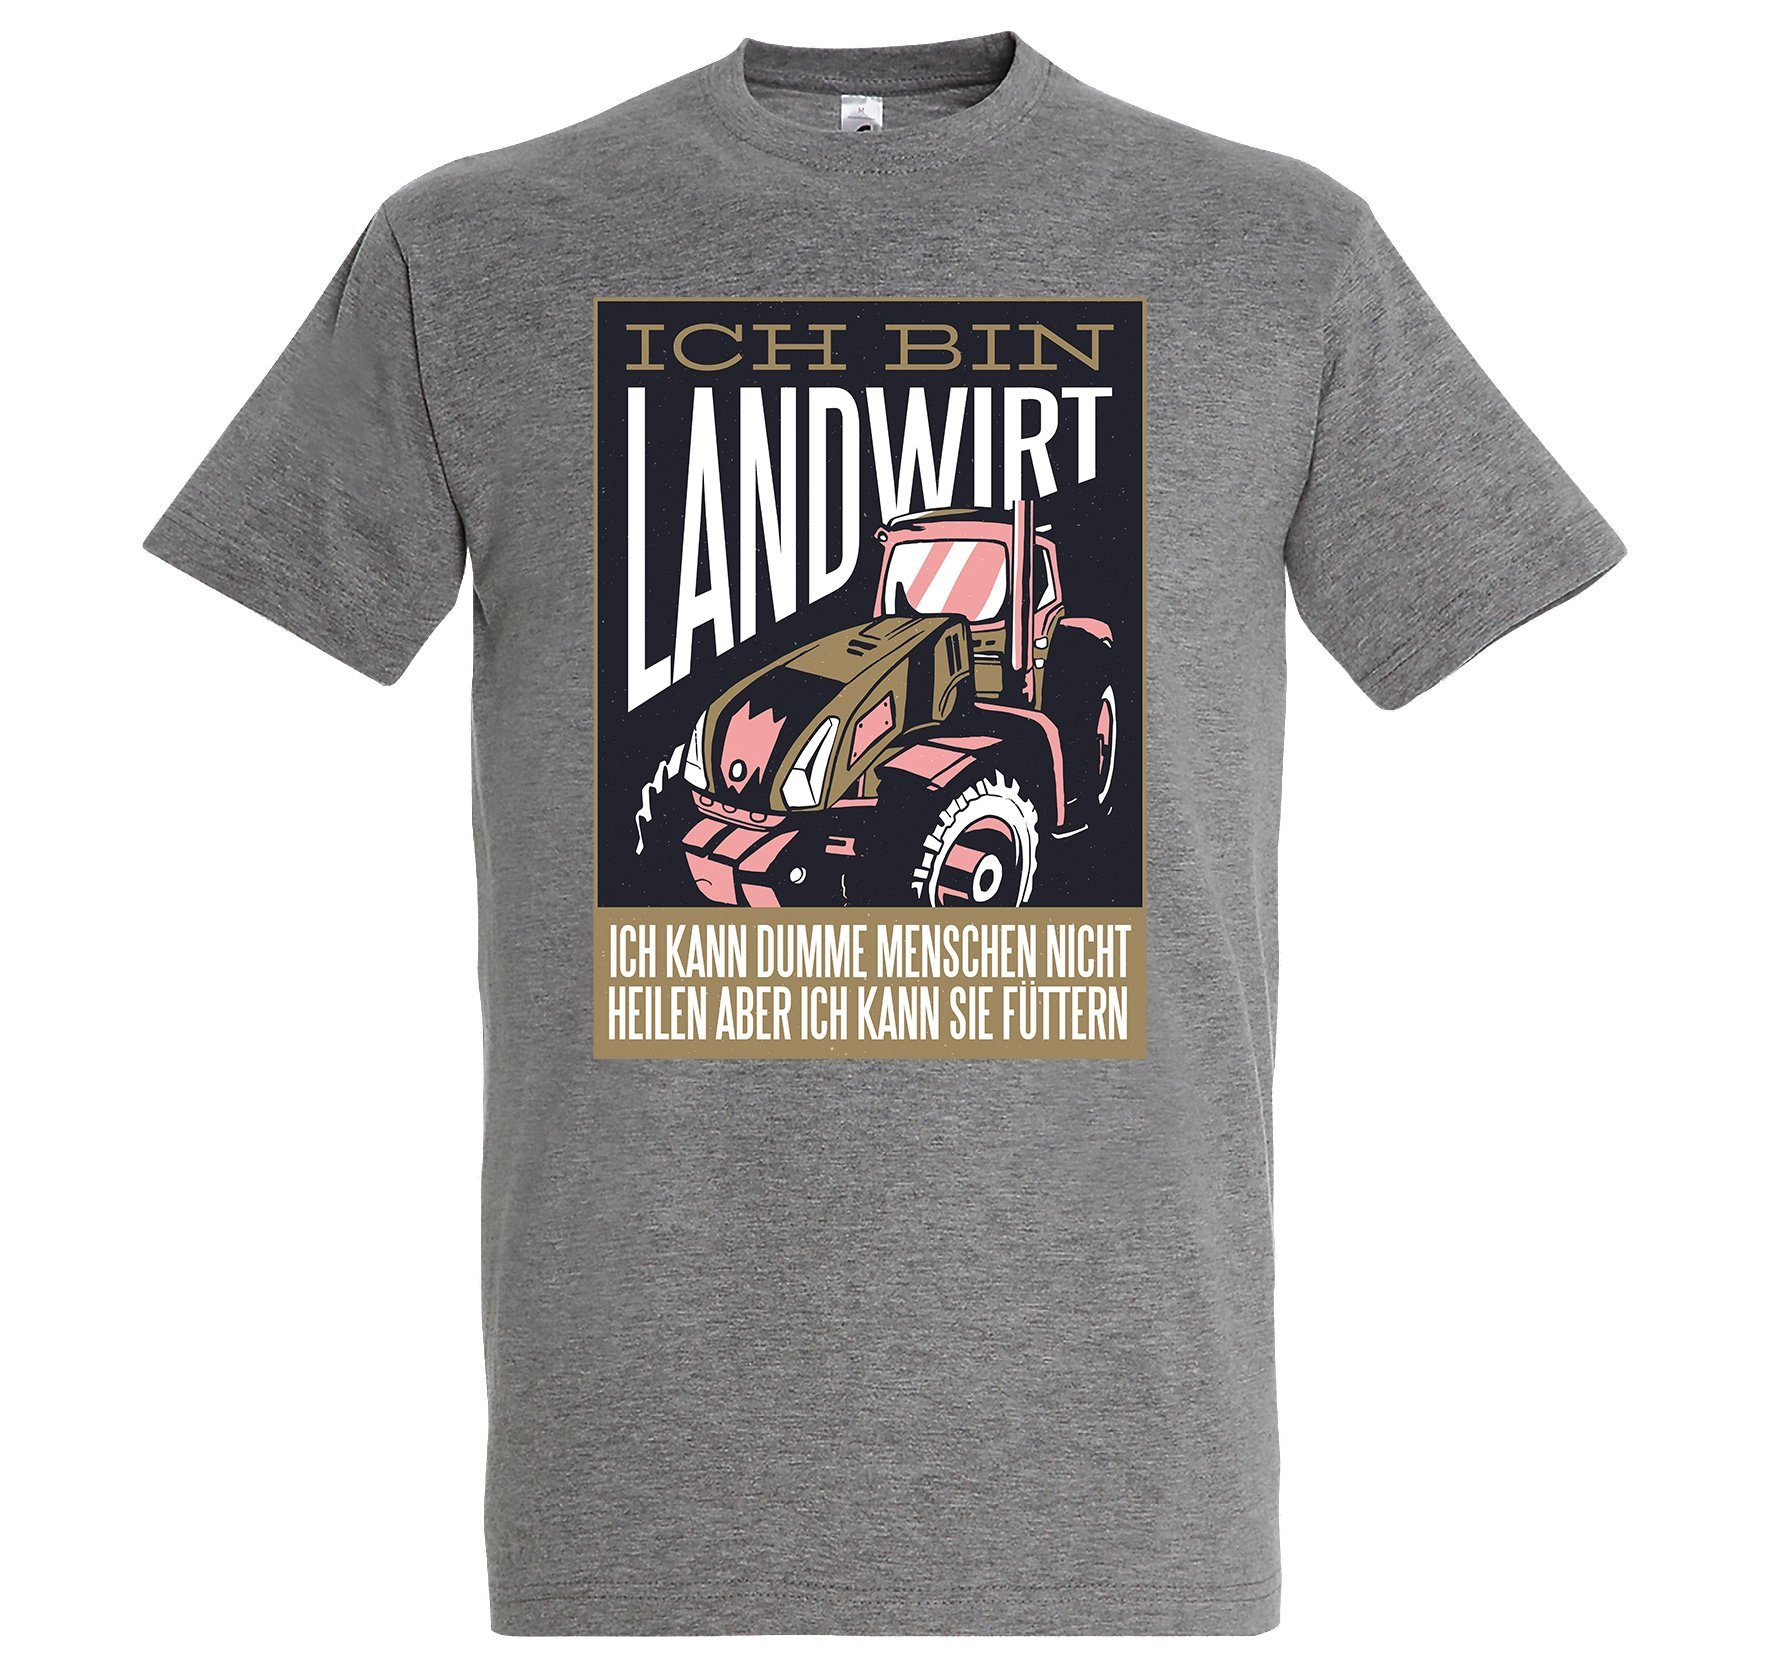 Youth Designz Print-Shirt Landwirt Herren T-Shirt mit lustigem Logo Aufdruck Grau